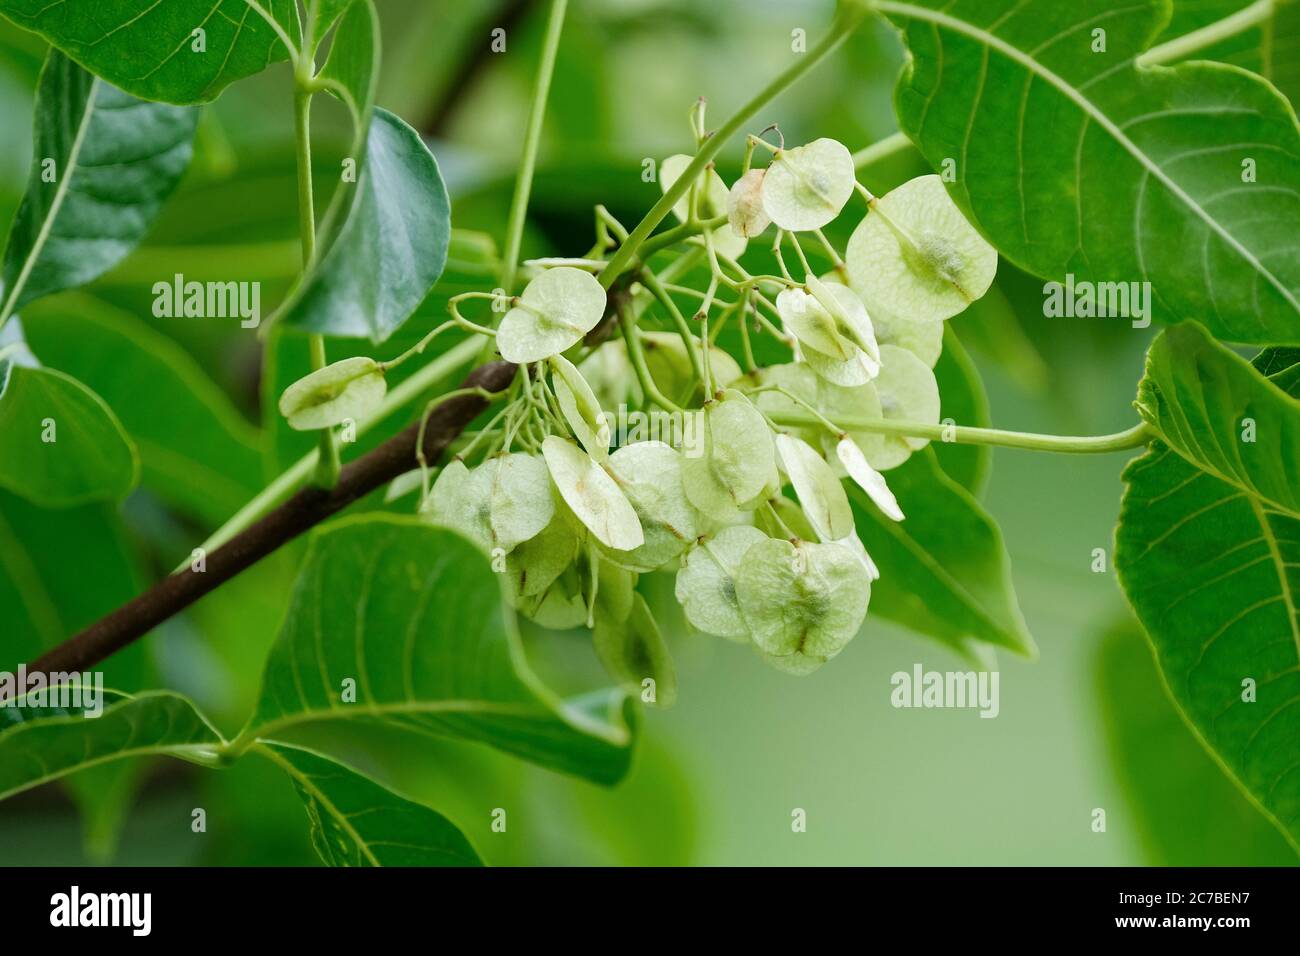 Hopfenartige Früchte, samara des Ptelea trifoliata, gewöhnlicher Hoptree, Waferasche, stinkende Asche, Skunk-Bus, der im Spätsommer auf einem Baum wächst Stockfoto